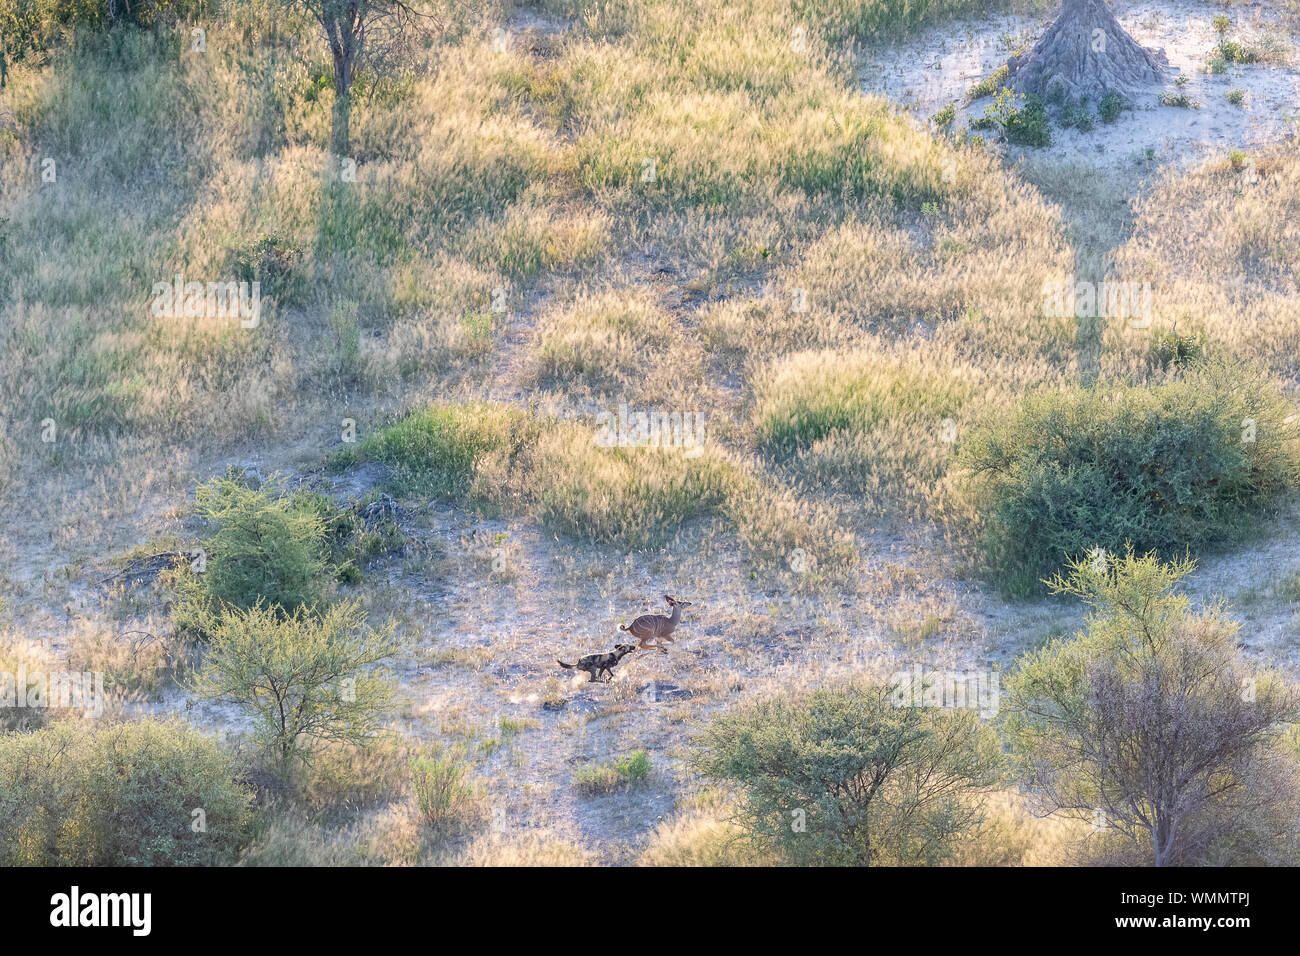 Vue aérienne d'un chien sauvage la chasse une gazelle dans une région boisée Banque D'Images